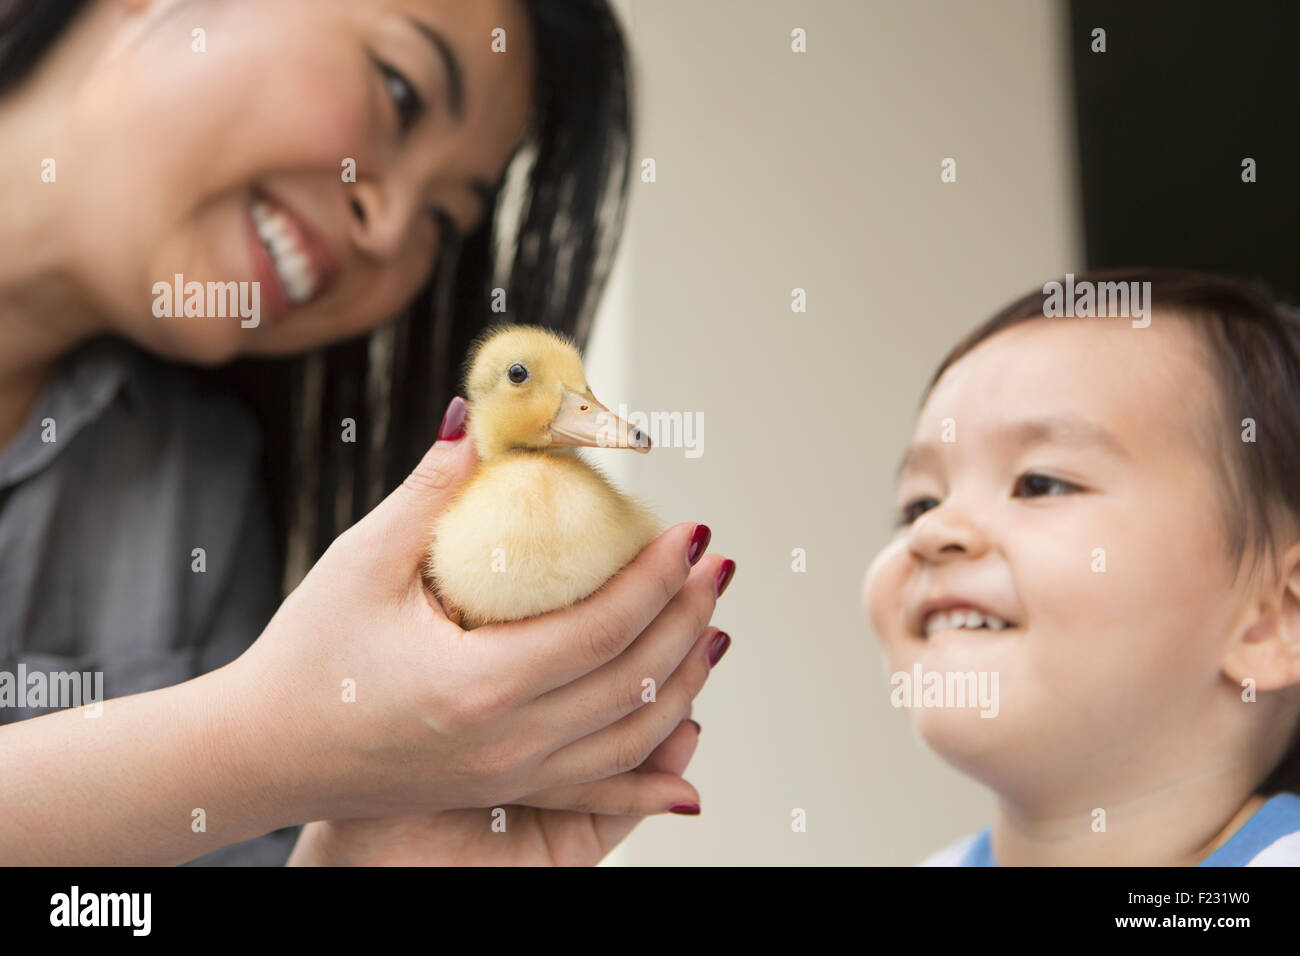 Lächelnde Frau hält eine gelbe Entlein in ihren Händen, ihrem kleinen Sohn beobachten. Stockfoto